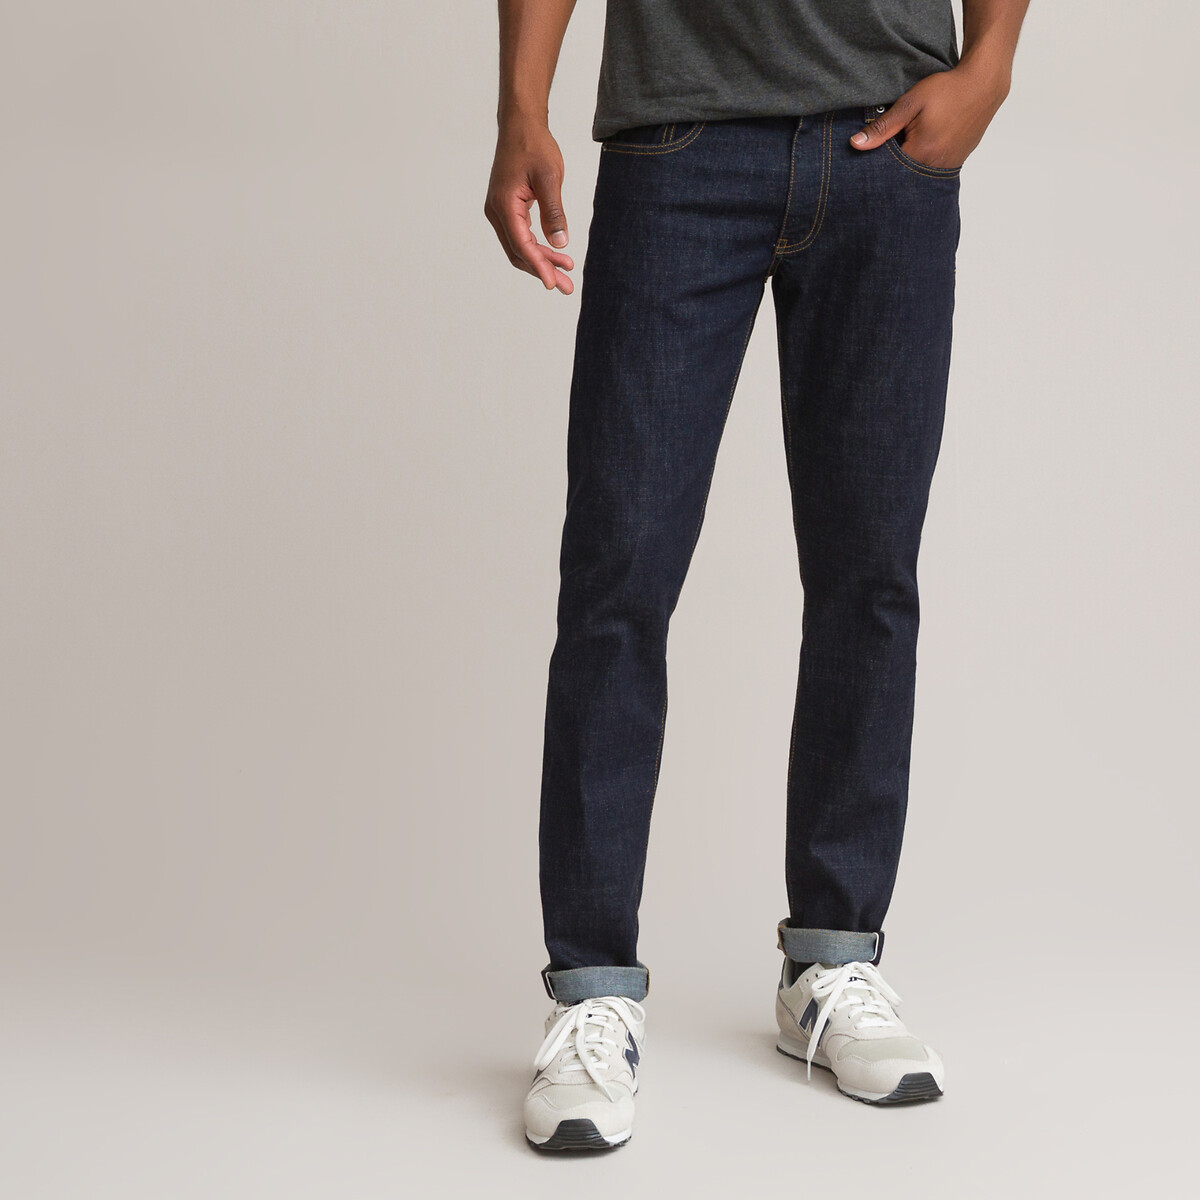 Jean Coupe X-slim La Redoute Garçon Vêtements Pantalons & Jeans Jeans Slim 